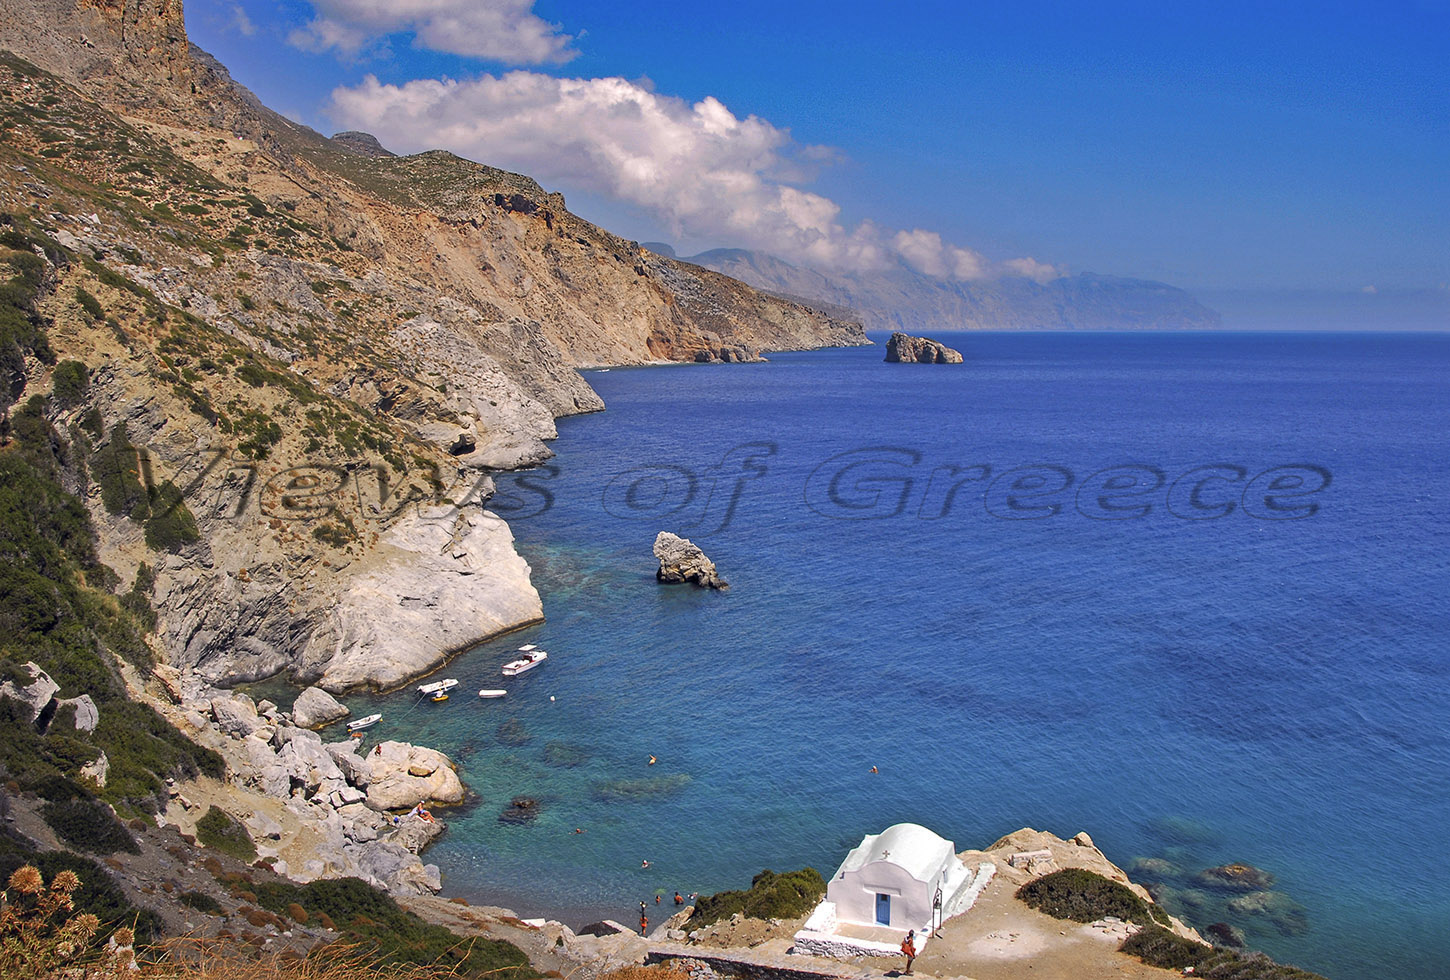 Αμοργός,  παραλίες, Χώρα, Χοζοβιώτισσα, big blue, Κυκλάδες, Amorgos, Cyclades, Aegean, Chora